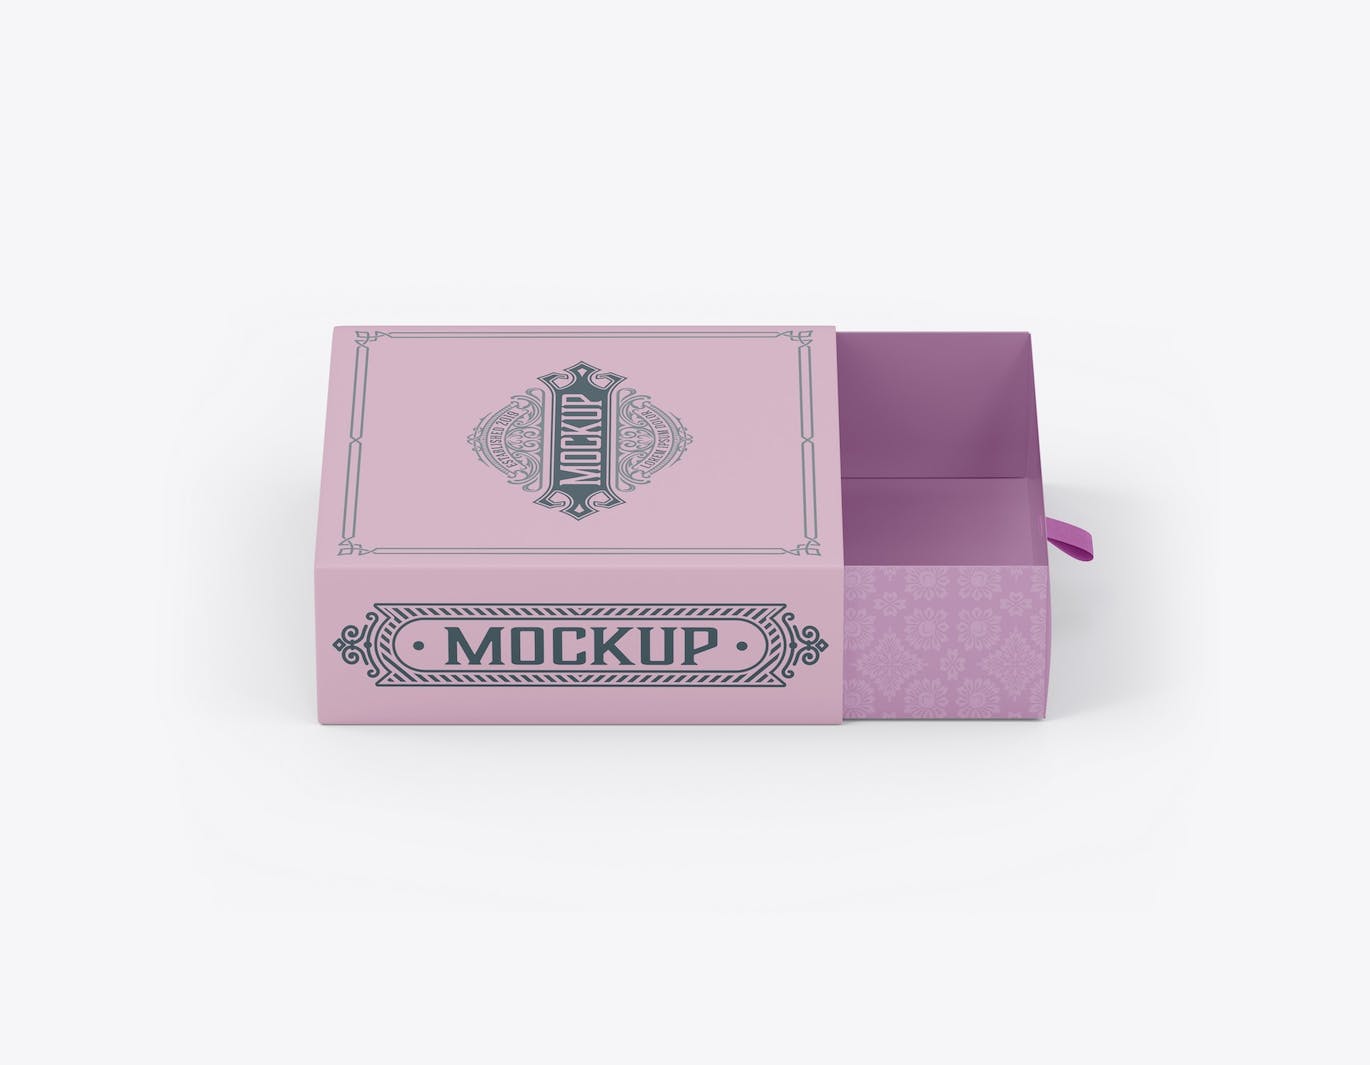 拖式纸盒包装设计样机 SlideBox Mockup 样机素材 第2张